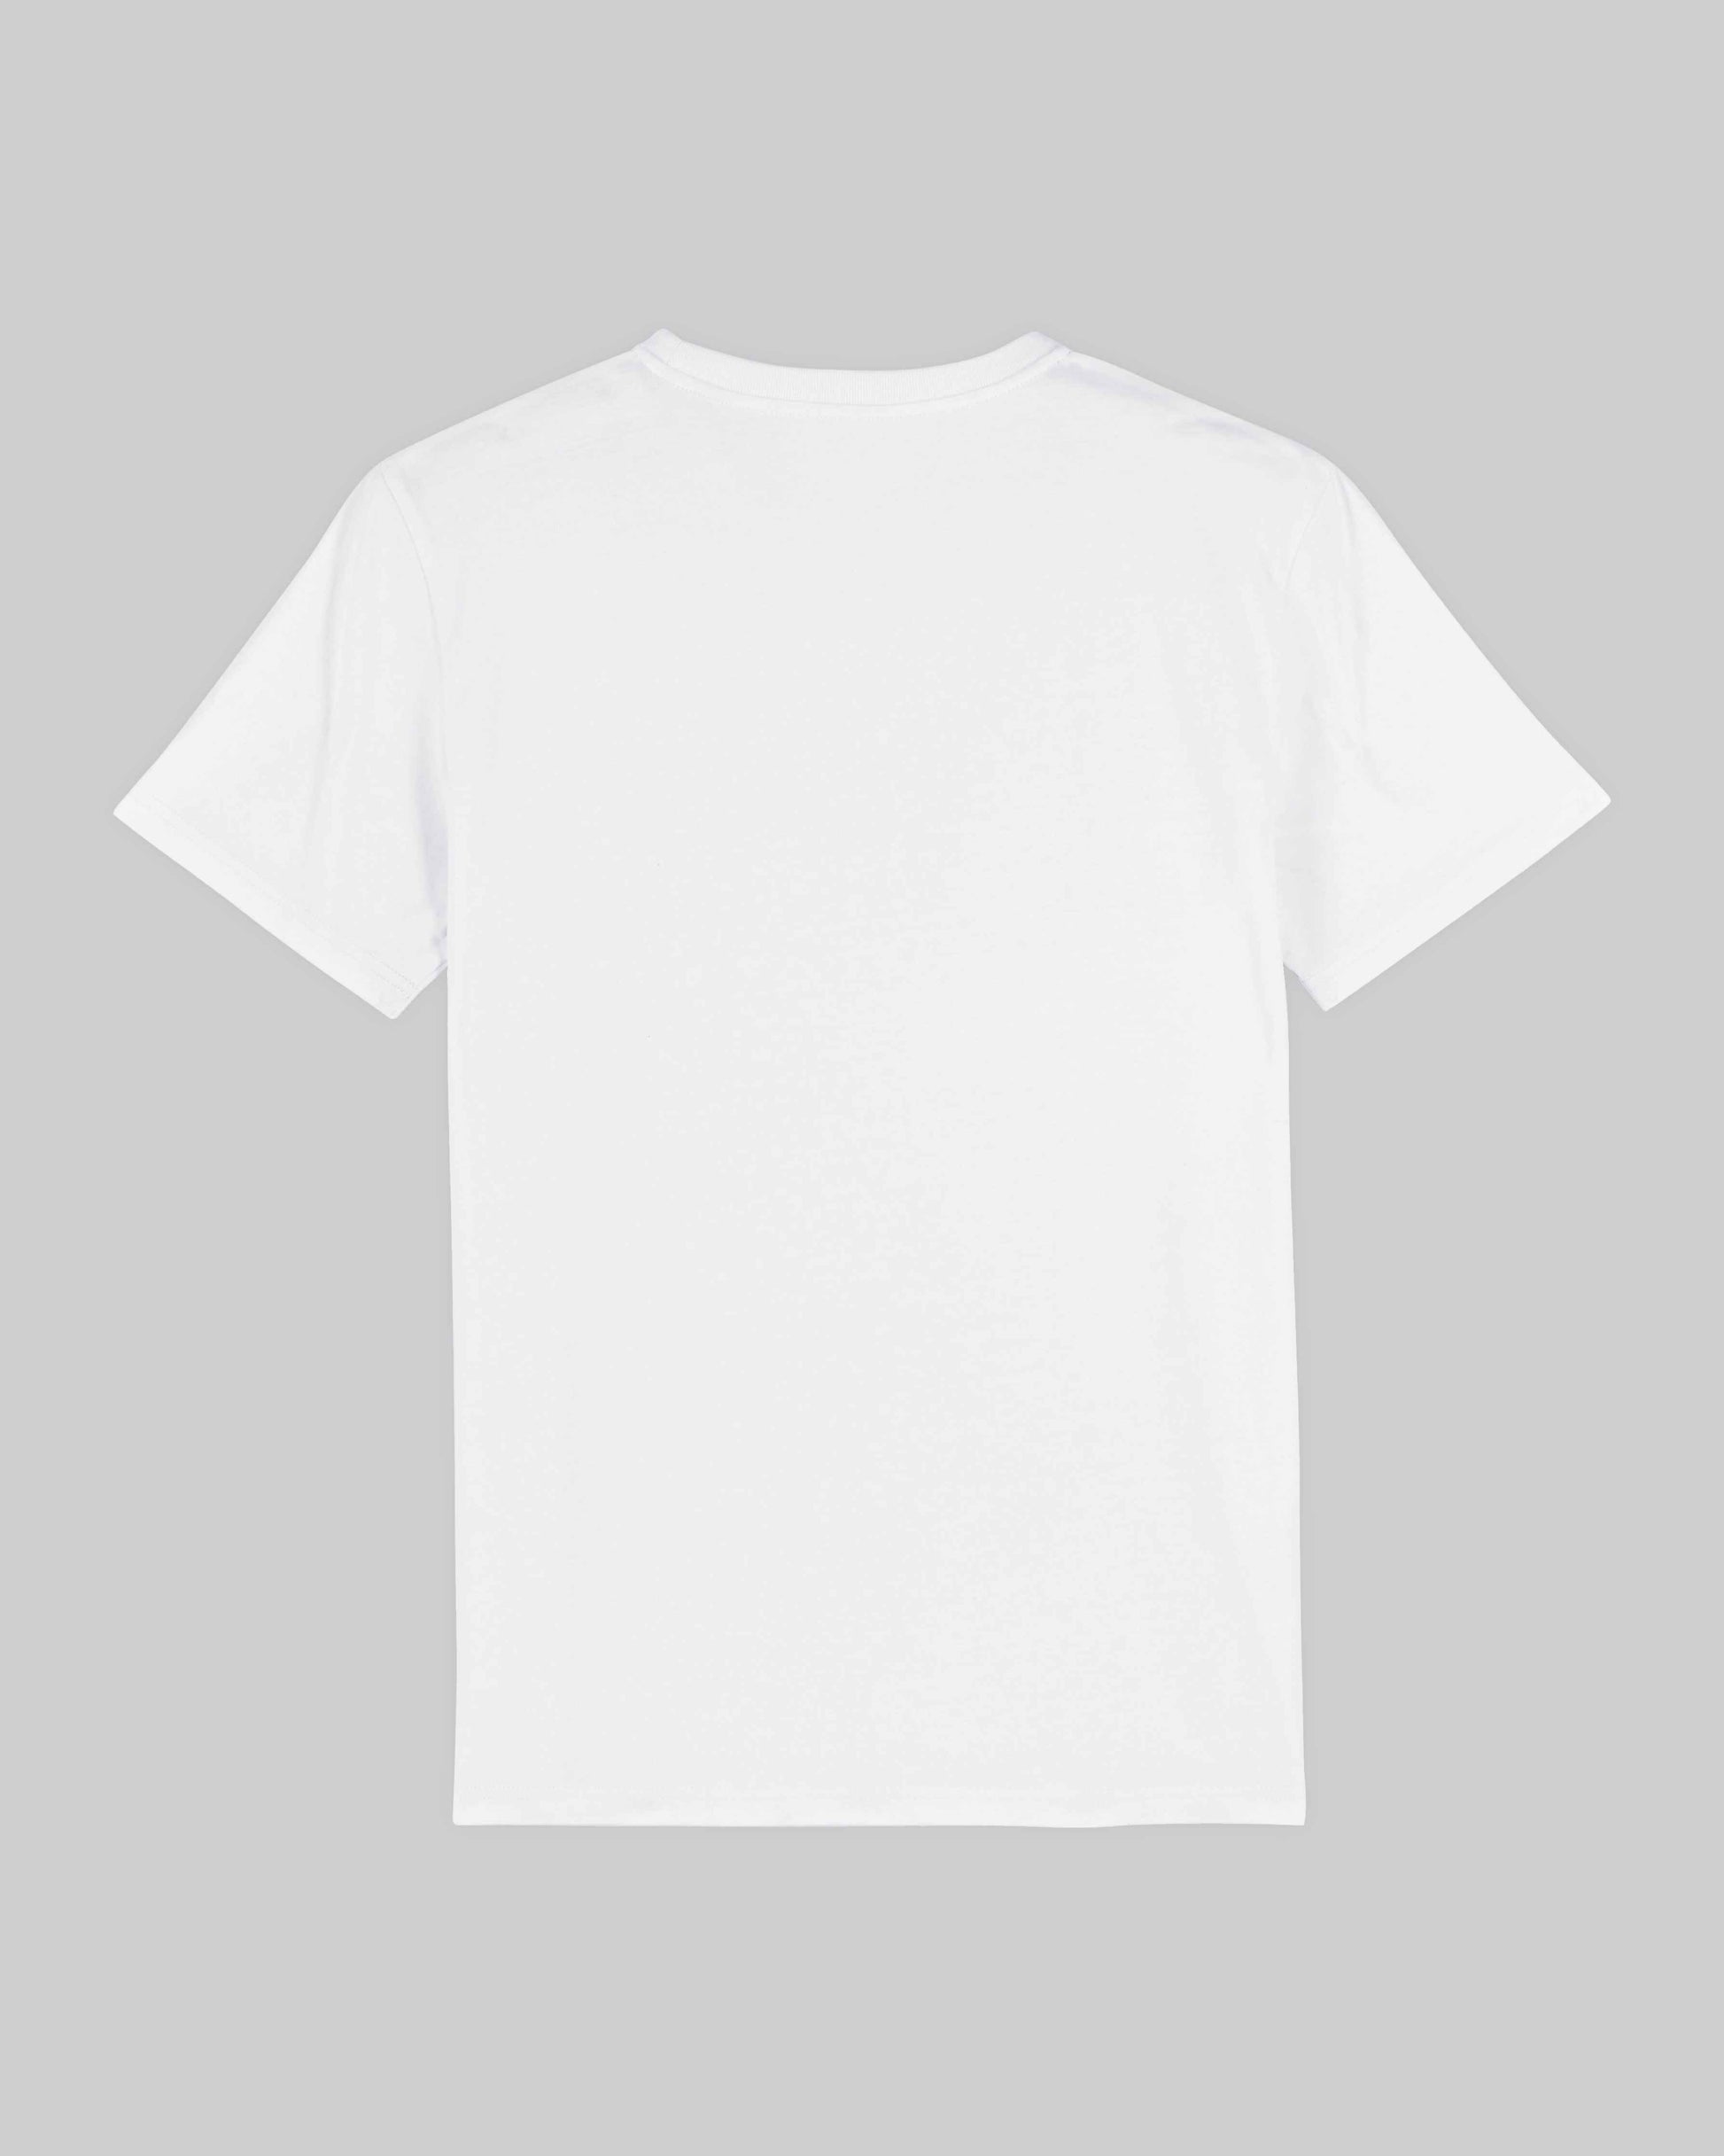 EINHORST® unisex Organic Shirt in Weiß mit dem Motiv "pride Regenbogen" in der Kombination schwarzer Regenbogen mit bunter Schrift, Bild von Shirt von hinten